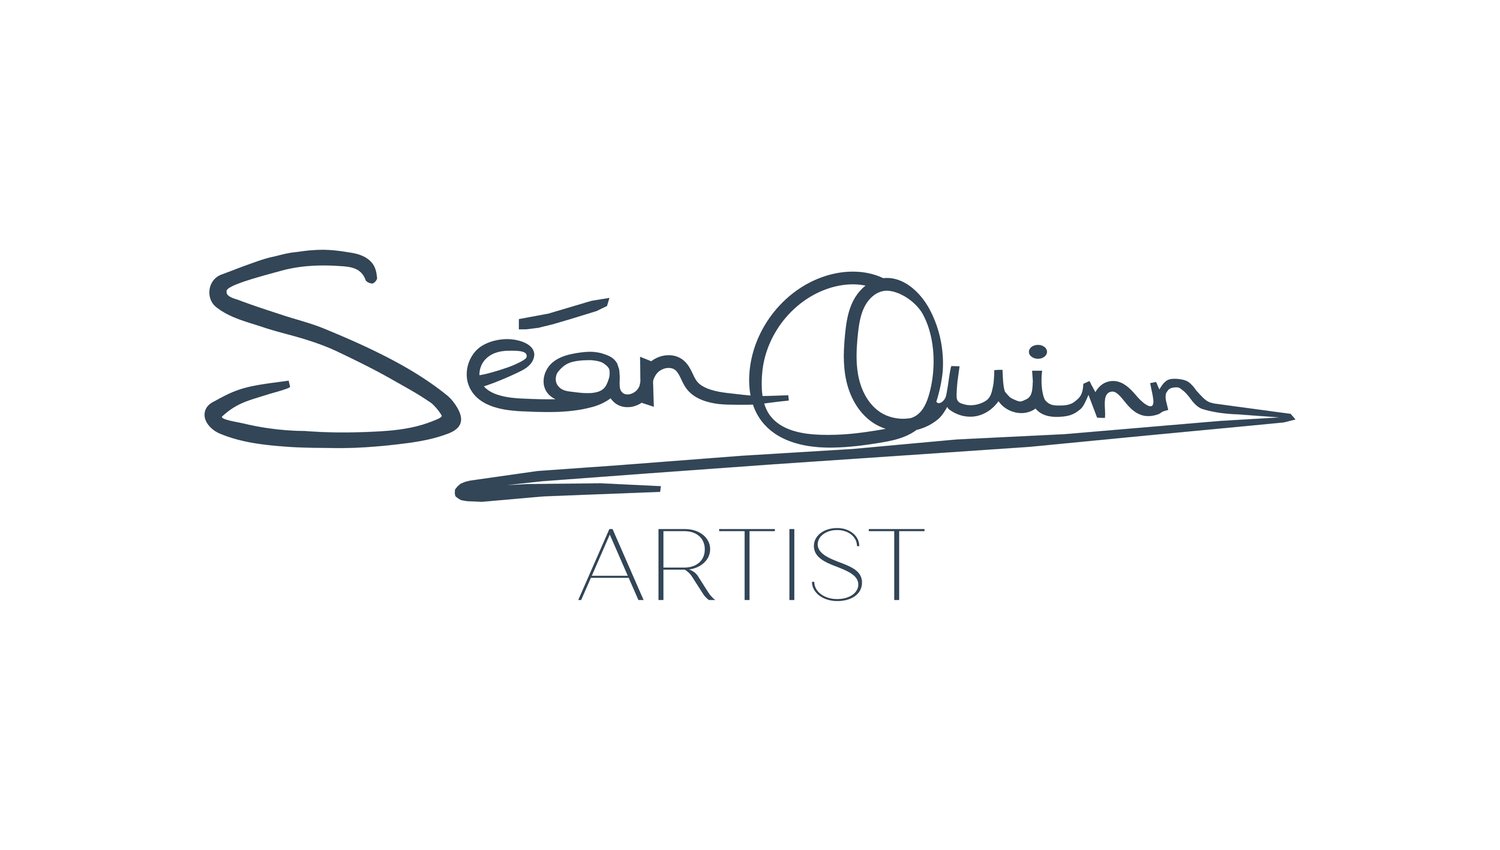 Sean Quinn Artist